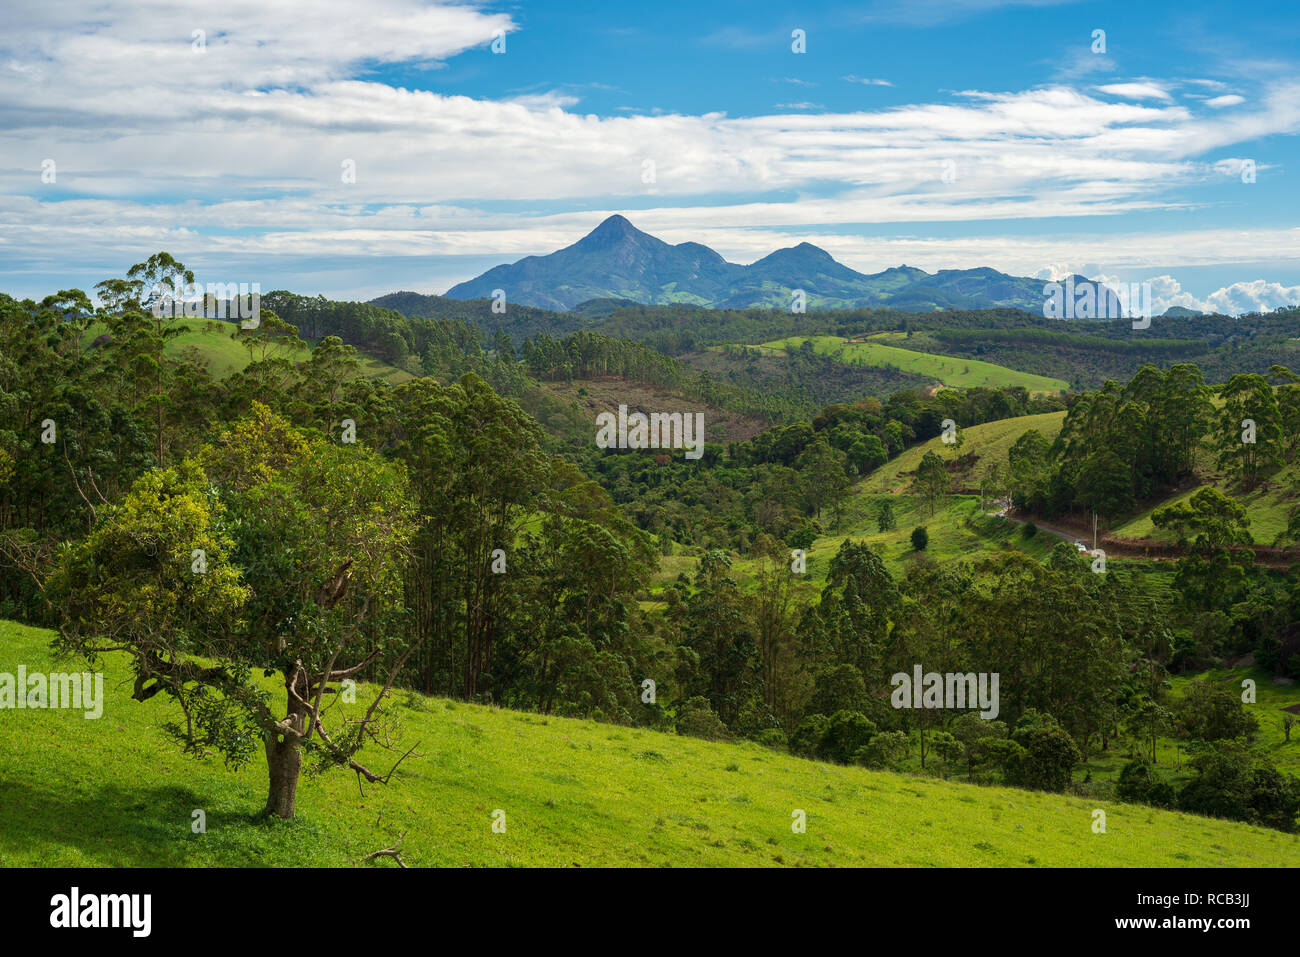 The Forno Grande mountain seen from the Rota do Lagarto scenic road in Pedra Azul, Espirito Santo, Brazil. Stock Photo